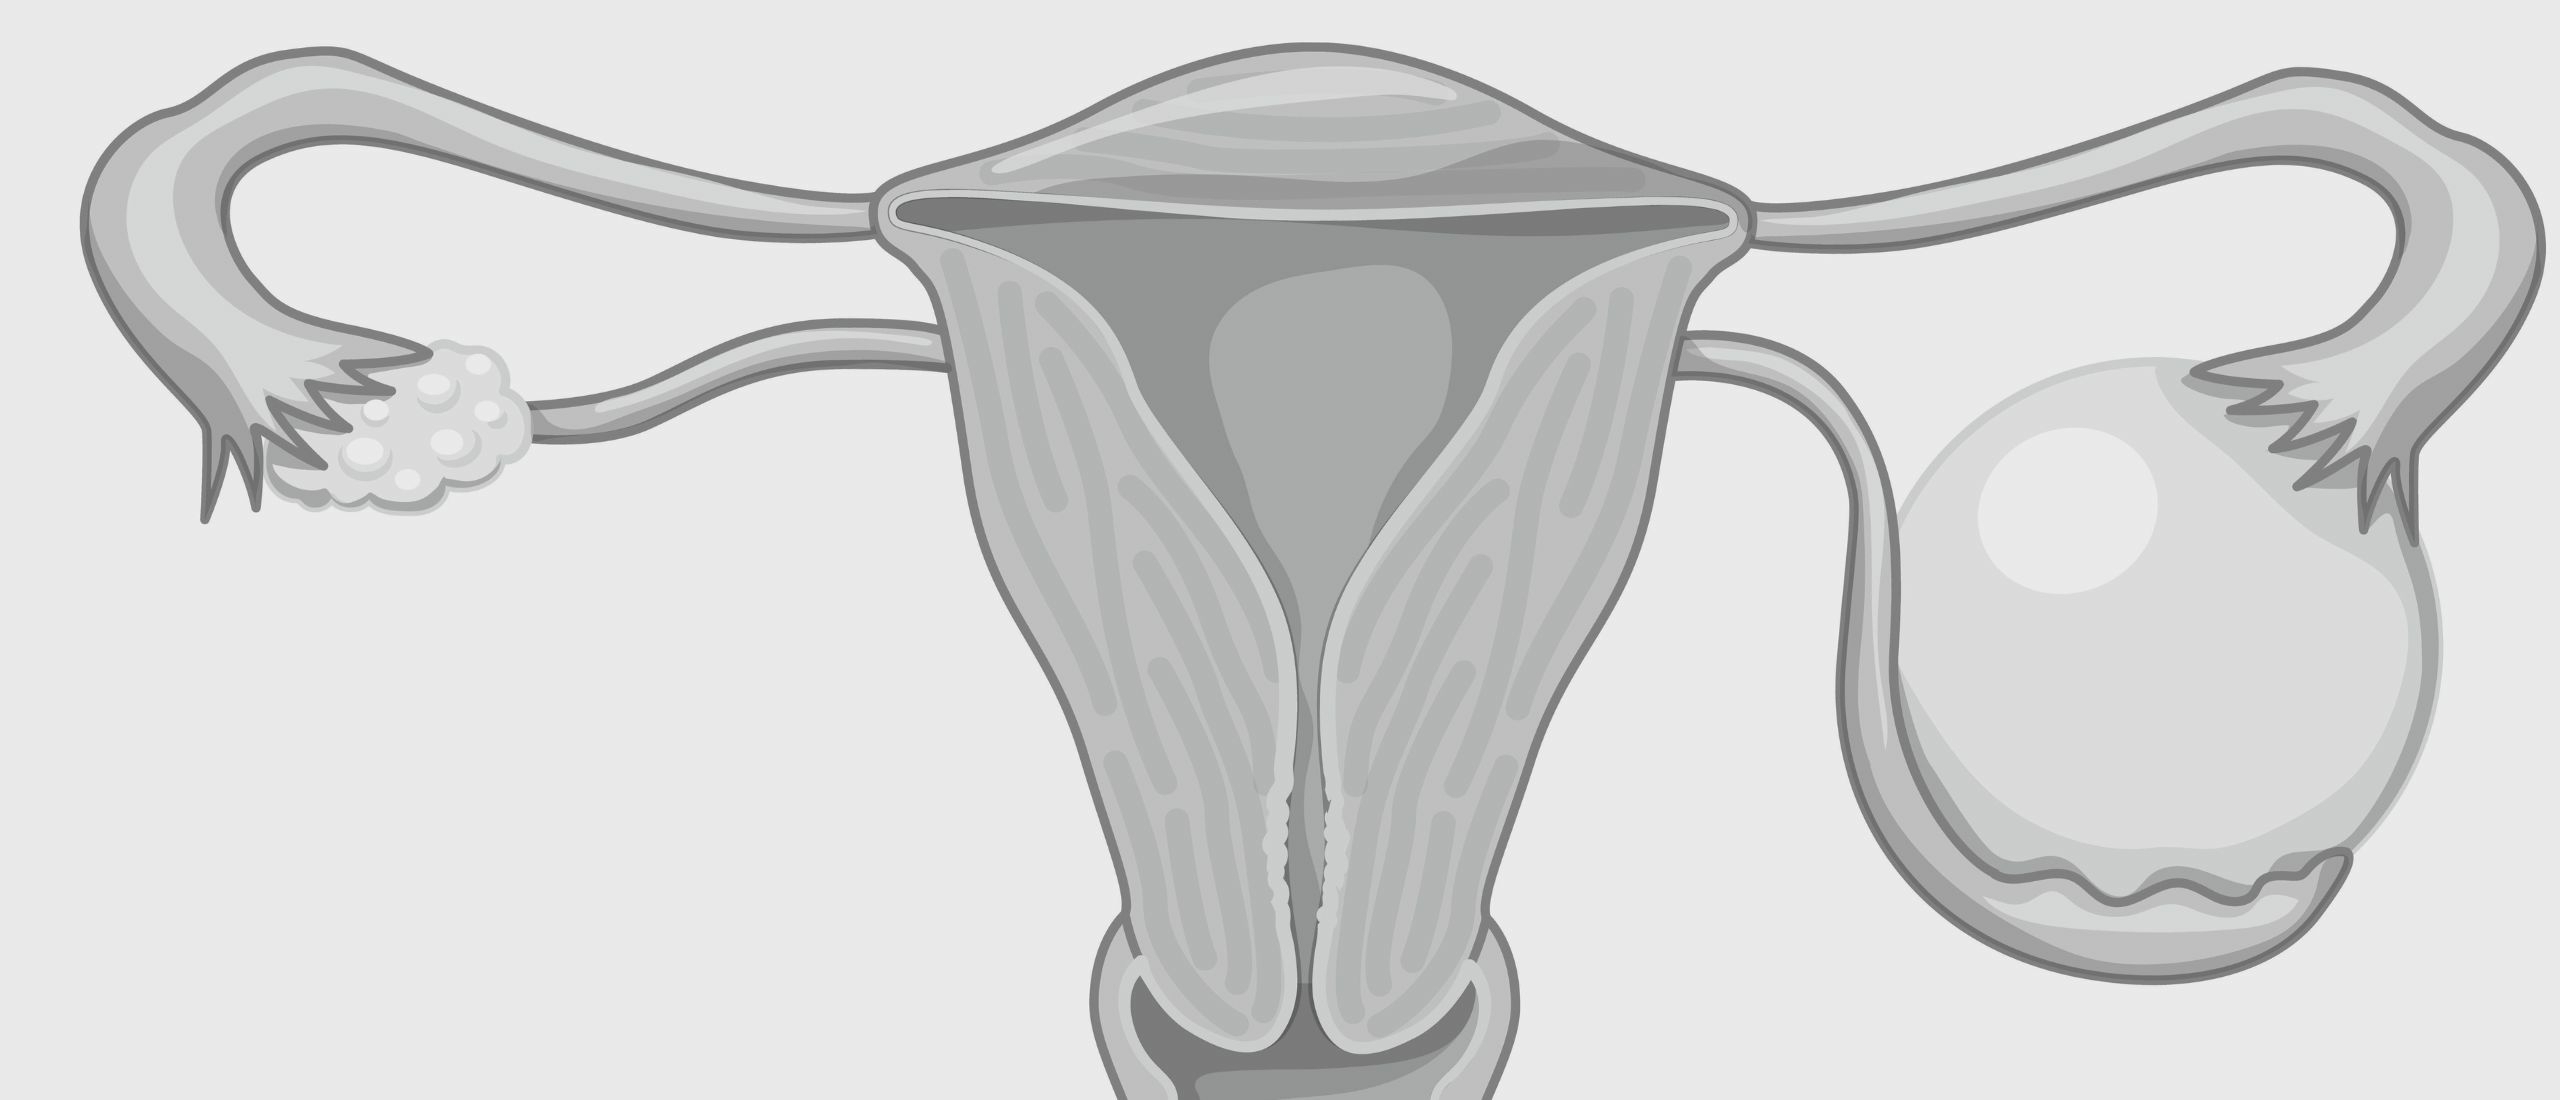 Polycysteus ovariumsyndroom uitgelegd: een gids voor ovariële gezondheid bij PCOS